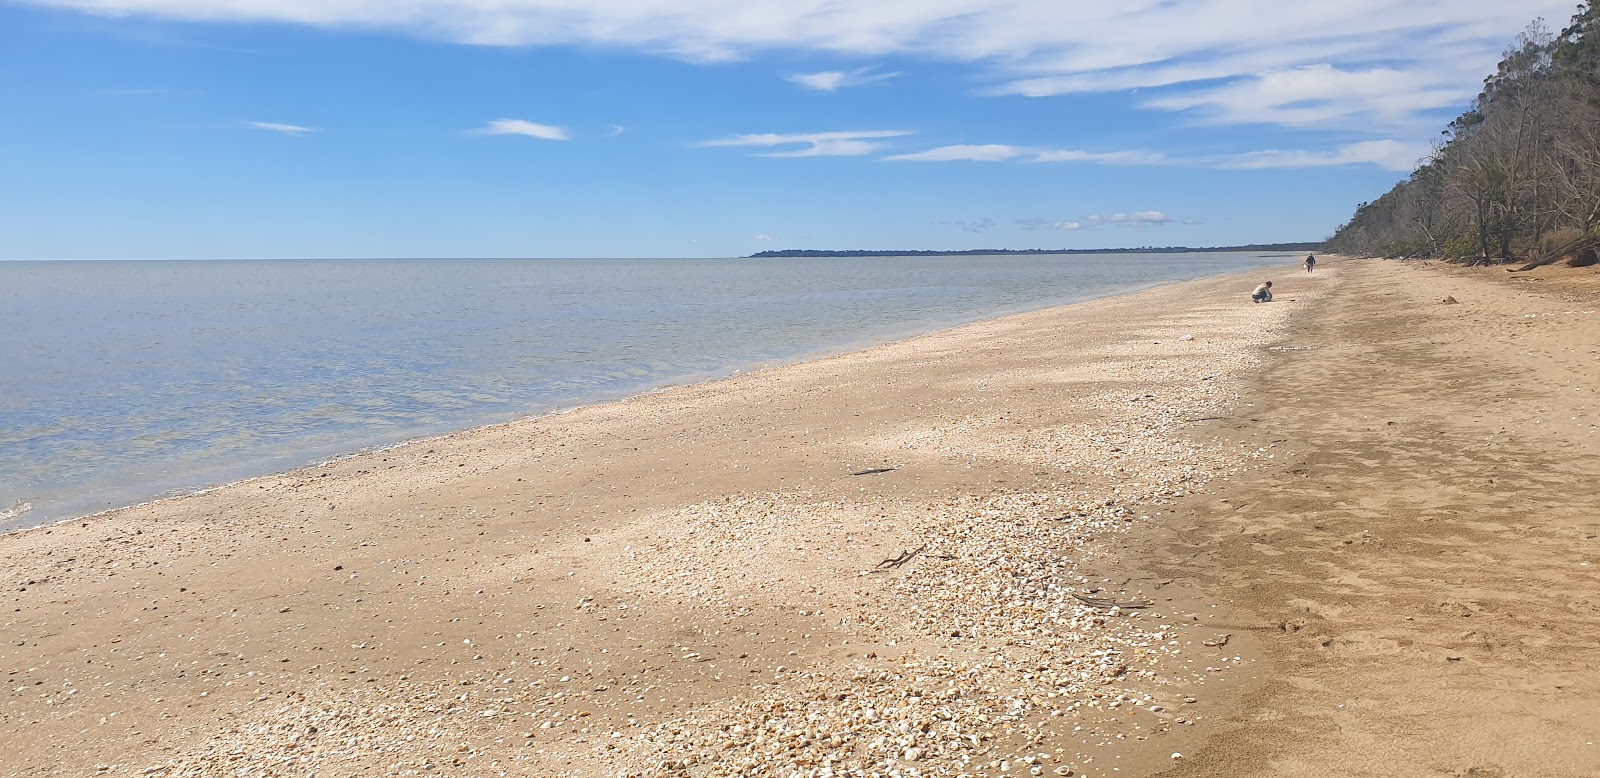 Zdjęcie Brennan Beach z powierzchnią piasek z kamykami